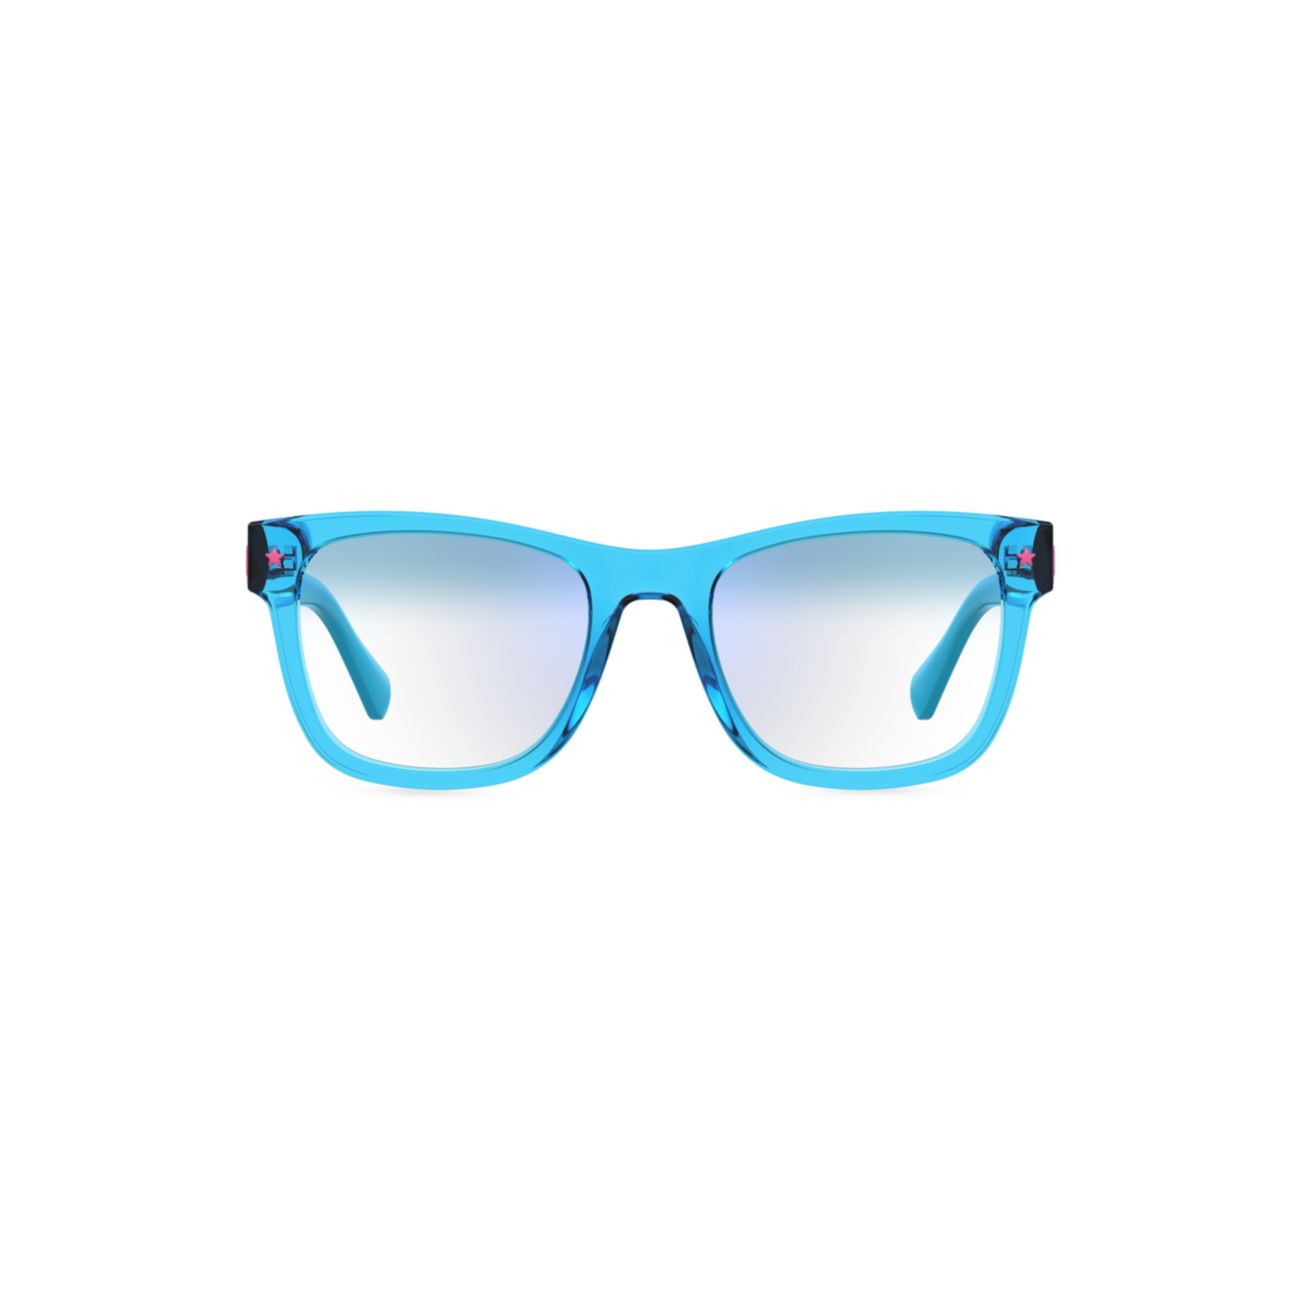 50 мм прямоугольные синие очки Chiara Ferragni